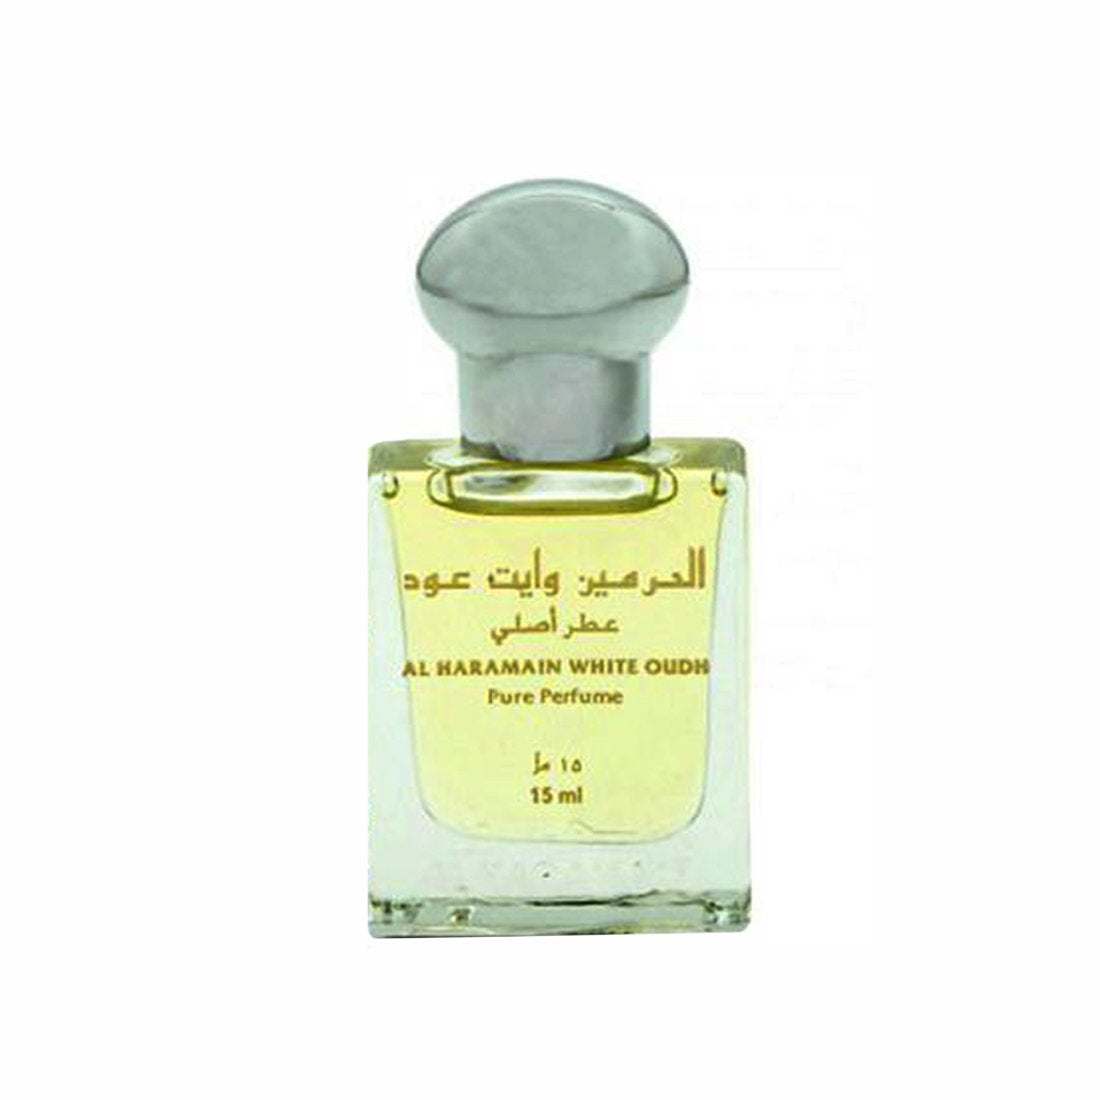 Al Haramain White Oudh & Amber Pack of 2 Attar- 2 x 15ml